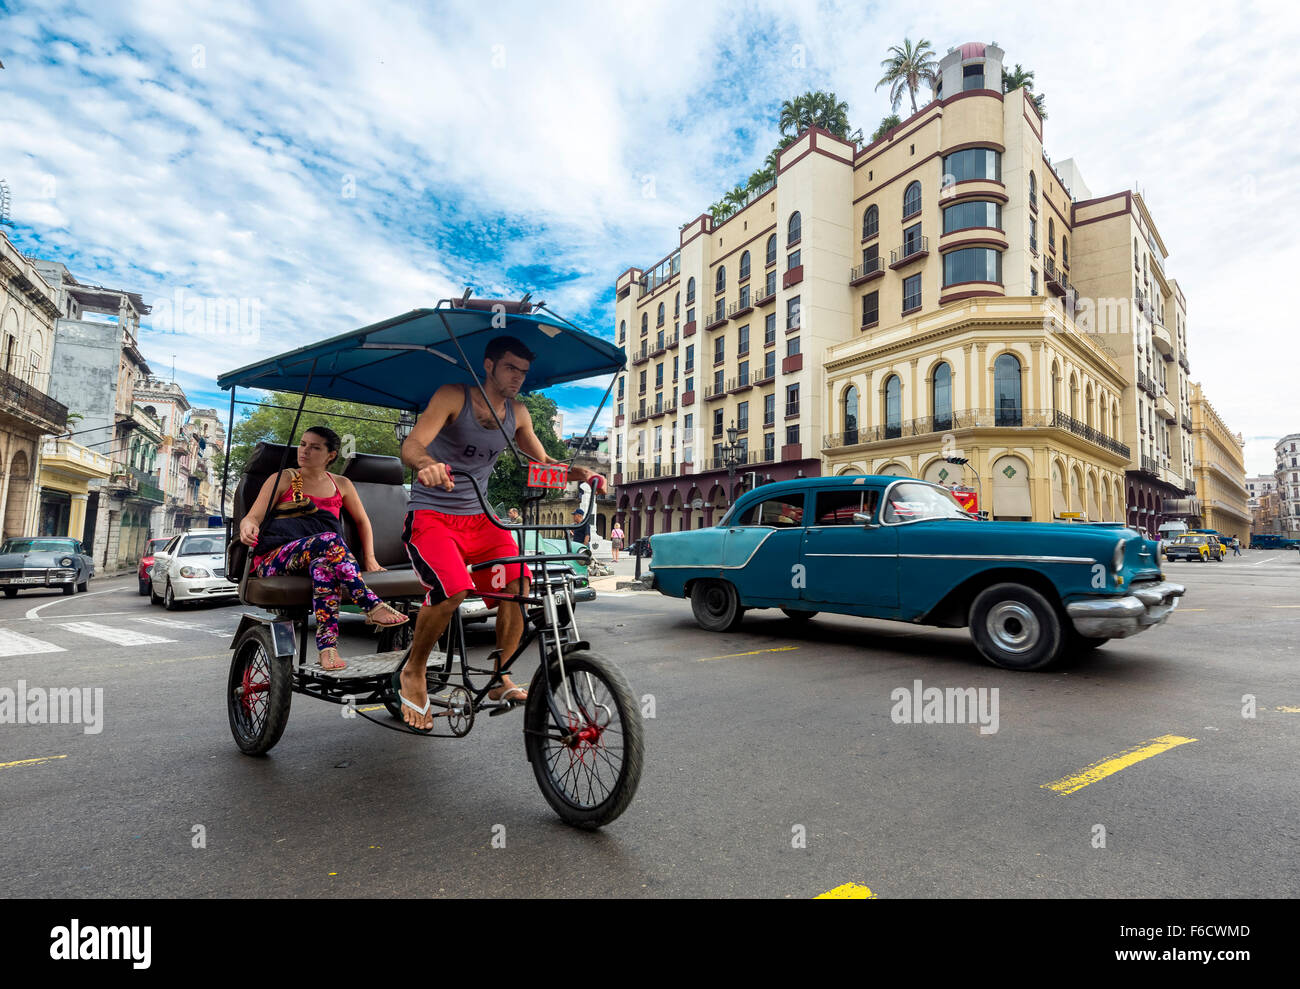 Oldtimer en el paisaje urbano, el triciclo, la gente taxi en la intersección de la calle cerca del Hotel Telégrafo, escena de una calle, La Habana, Foto de stock